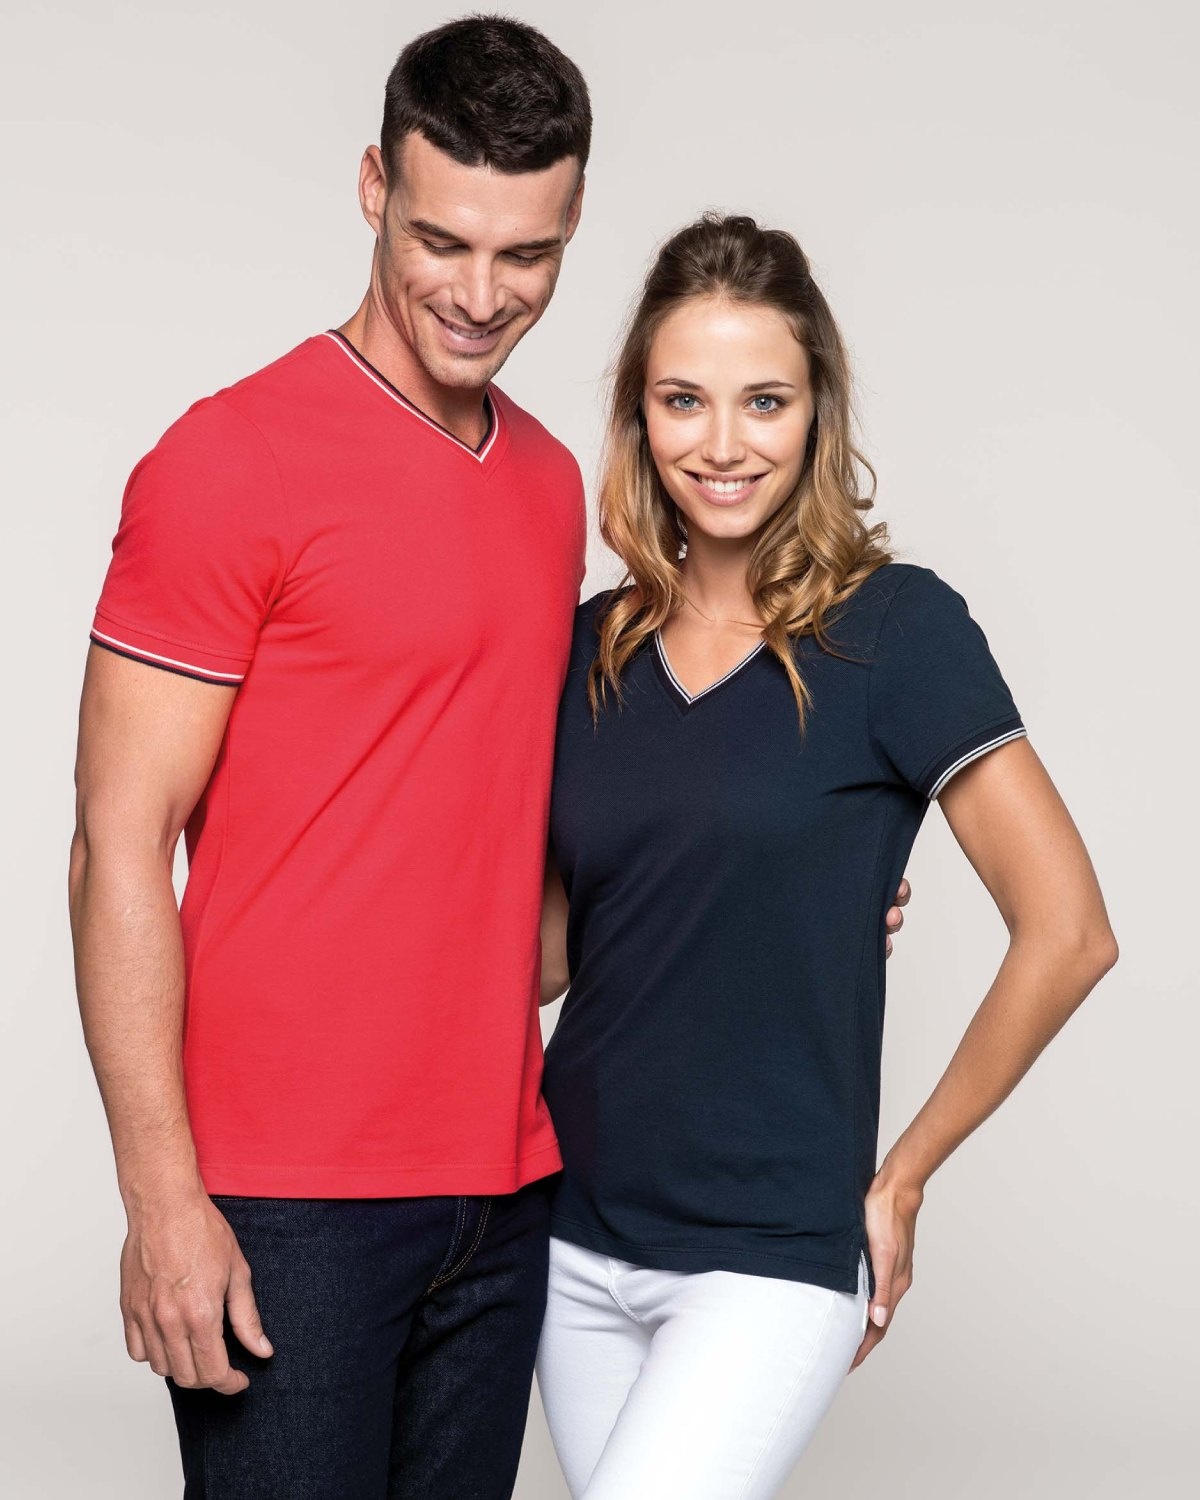 Blij Niet doen Stroomopwaarts Kwalitatief t-shirt met v-hals in 6 kleuren voor dames en heren kopen?